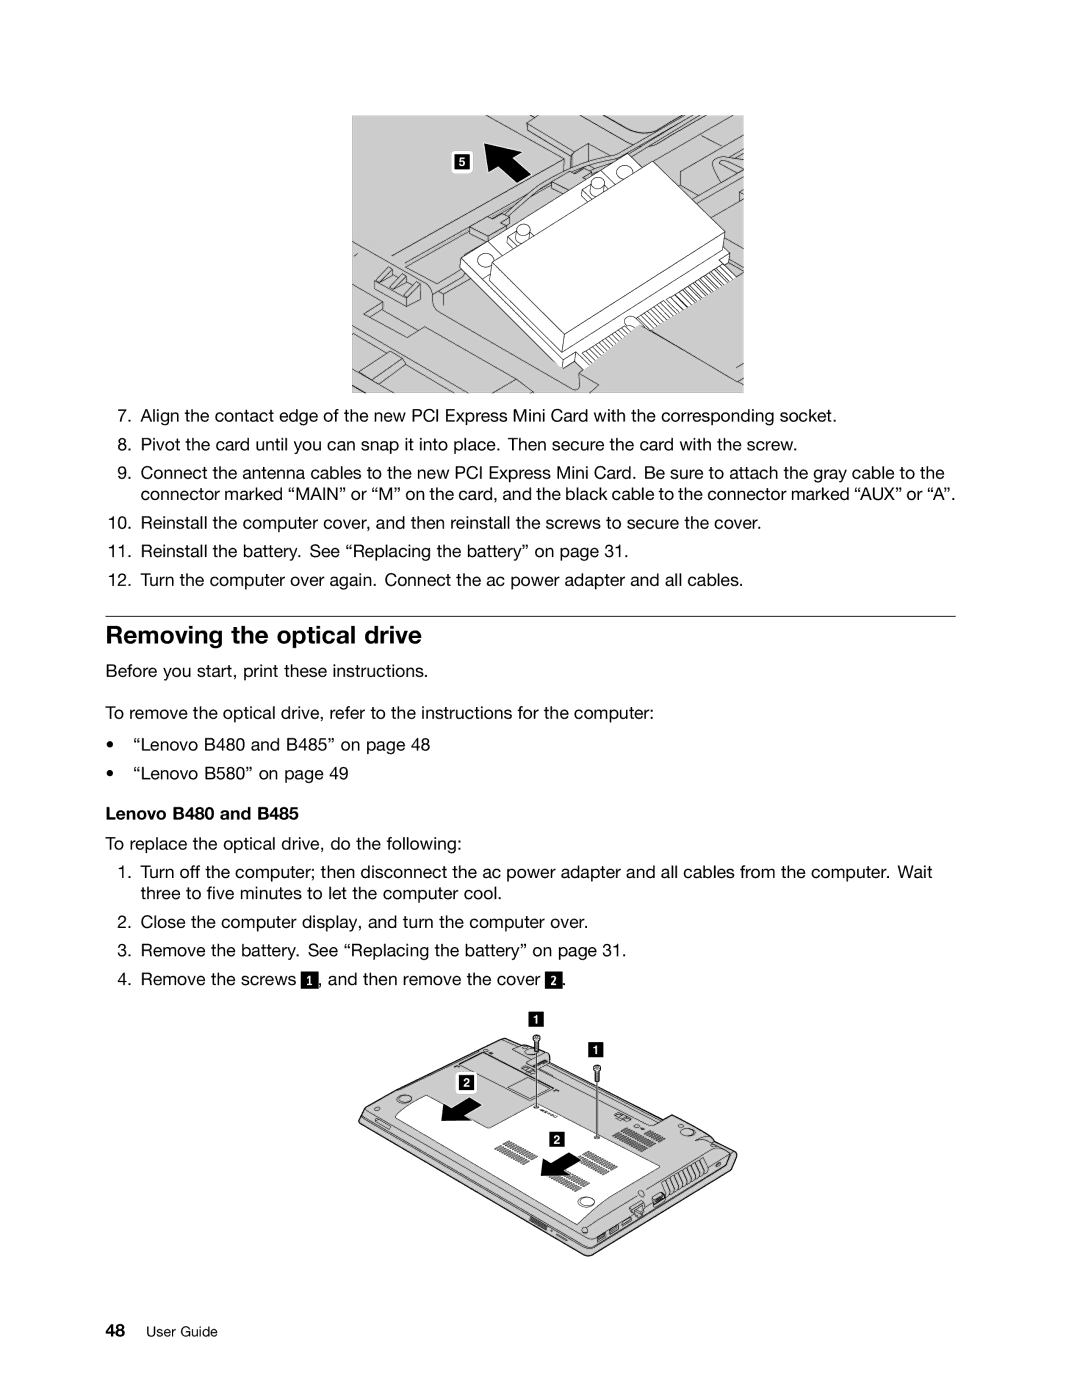 Lenovo manual Removing the optical drive, Lenovo B480 and B485 